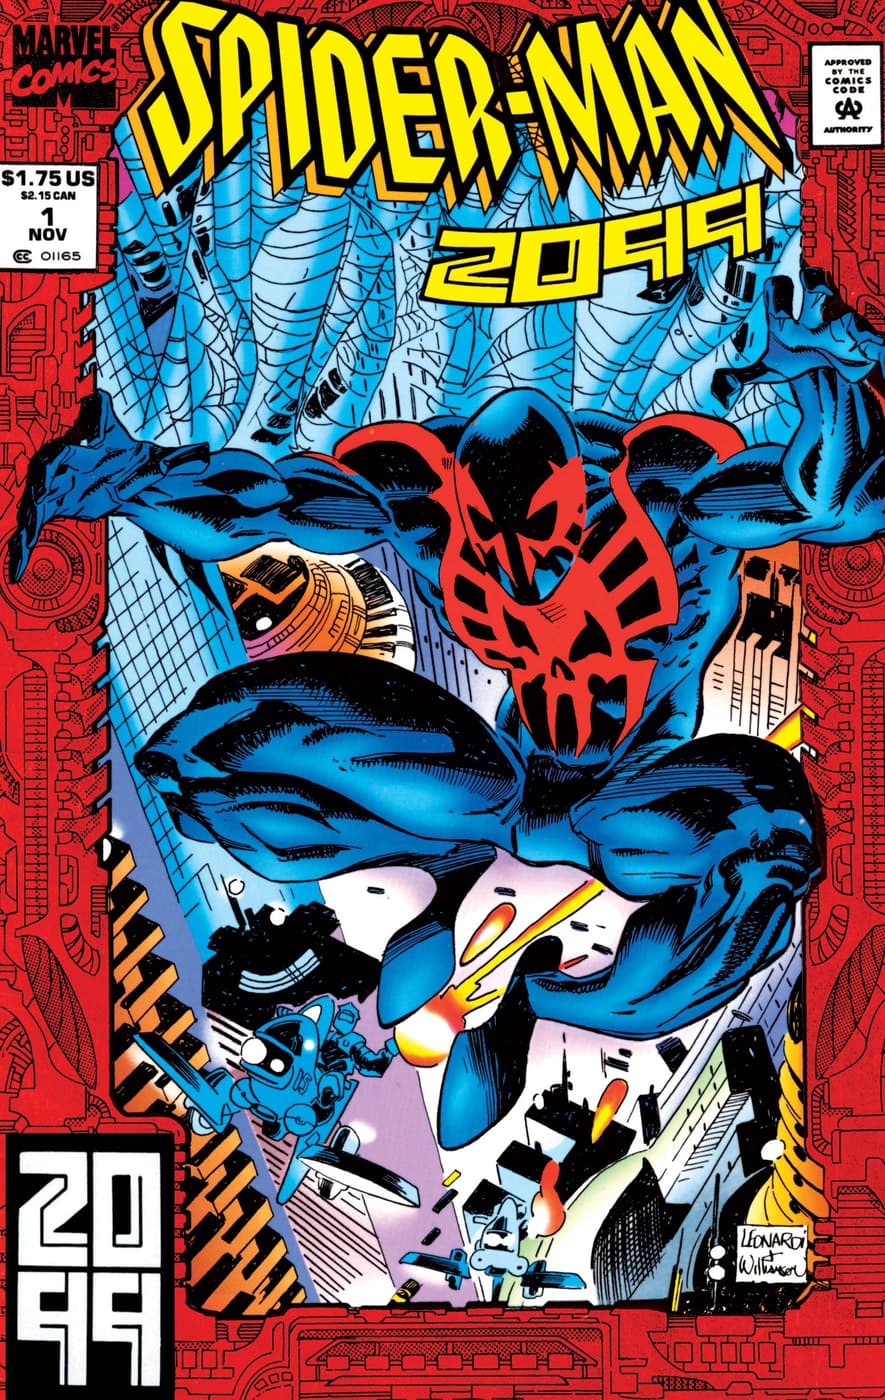 SPIDER-MAN 2099 (1992) #1 Spider-Man 2099